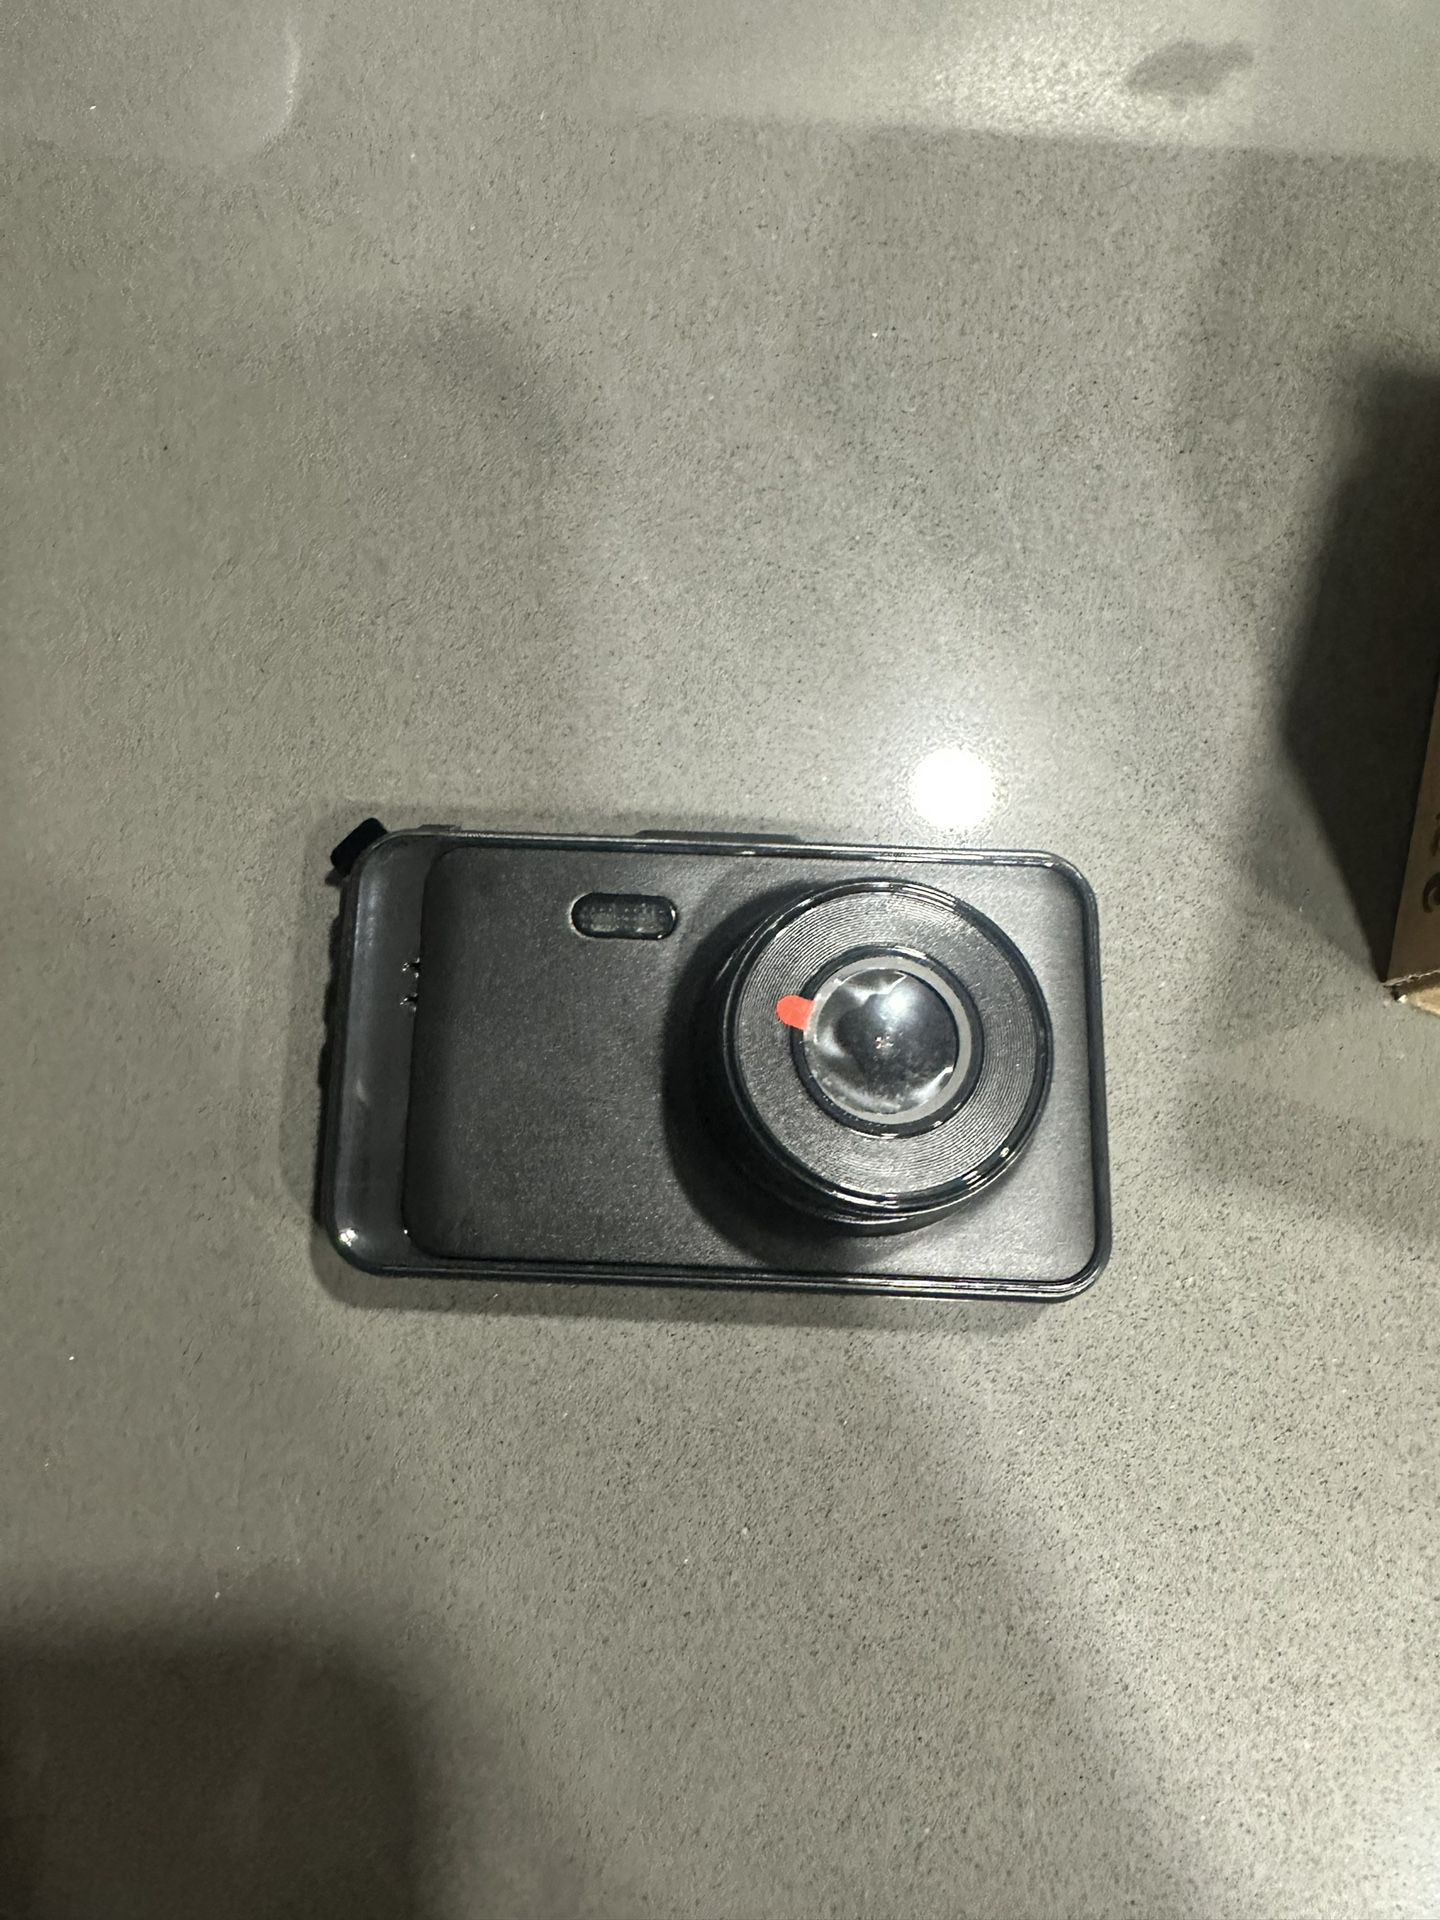  Rear Camera For SSONTONG Mode A10 Dash Cam